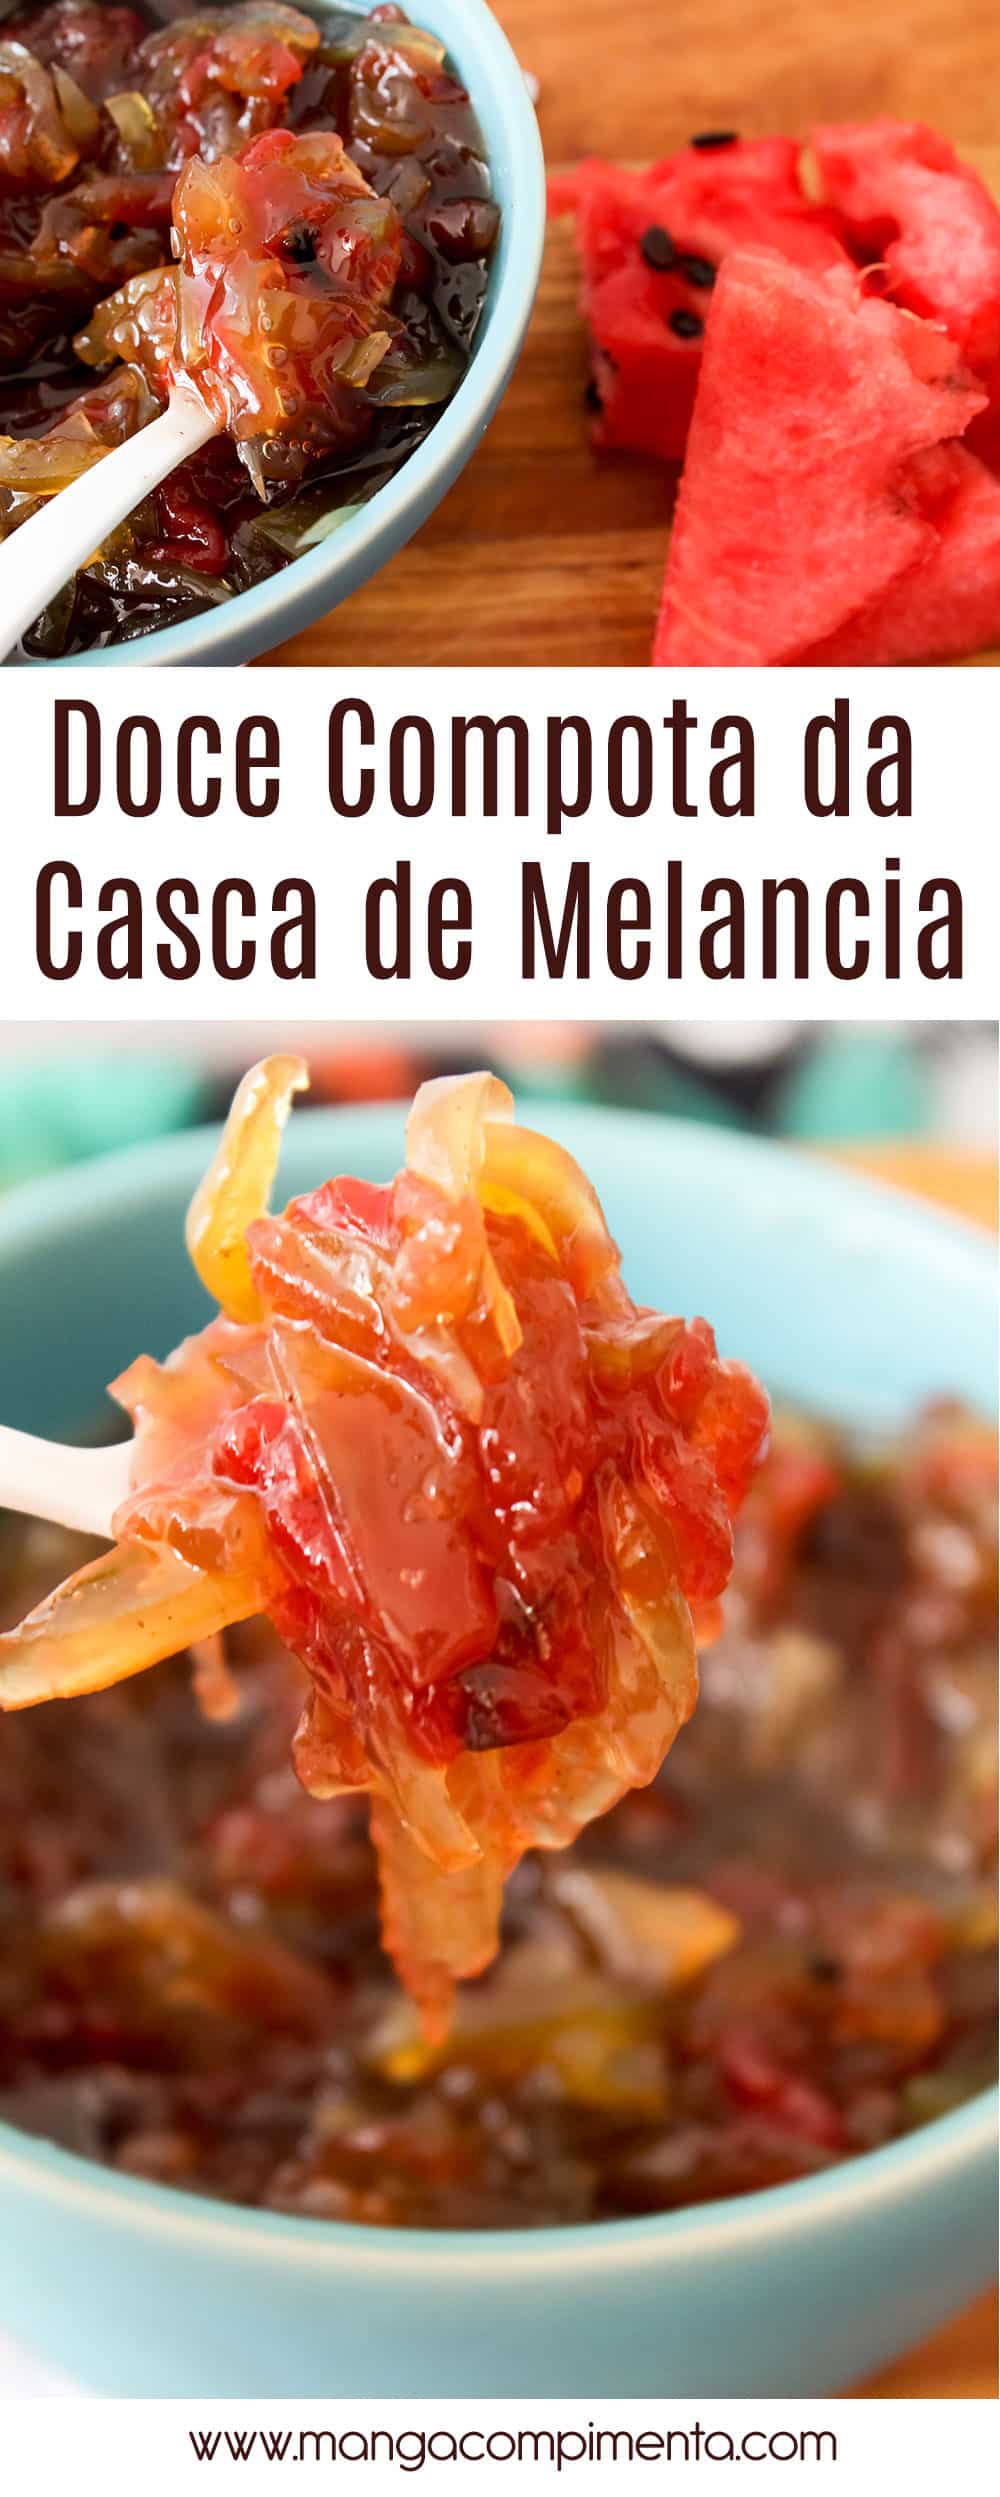 Receita de Doce Compota da Casca de Melancia - um doce caseiro delicioso para fazer no verão!